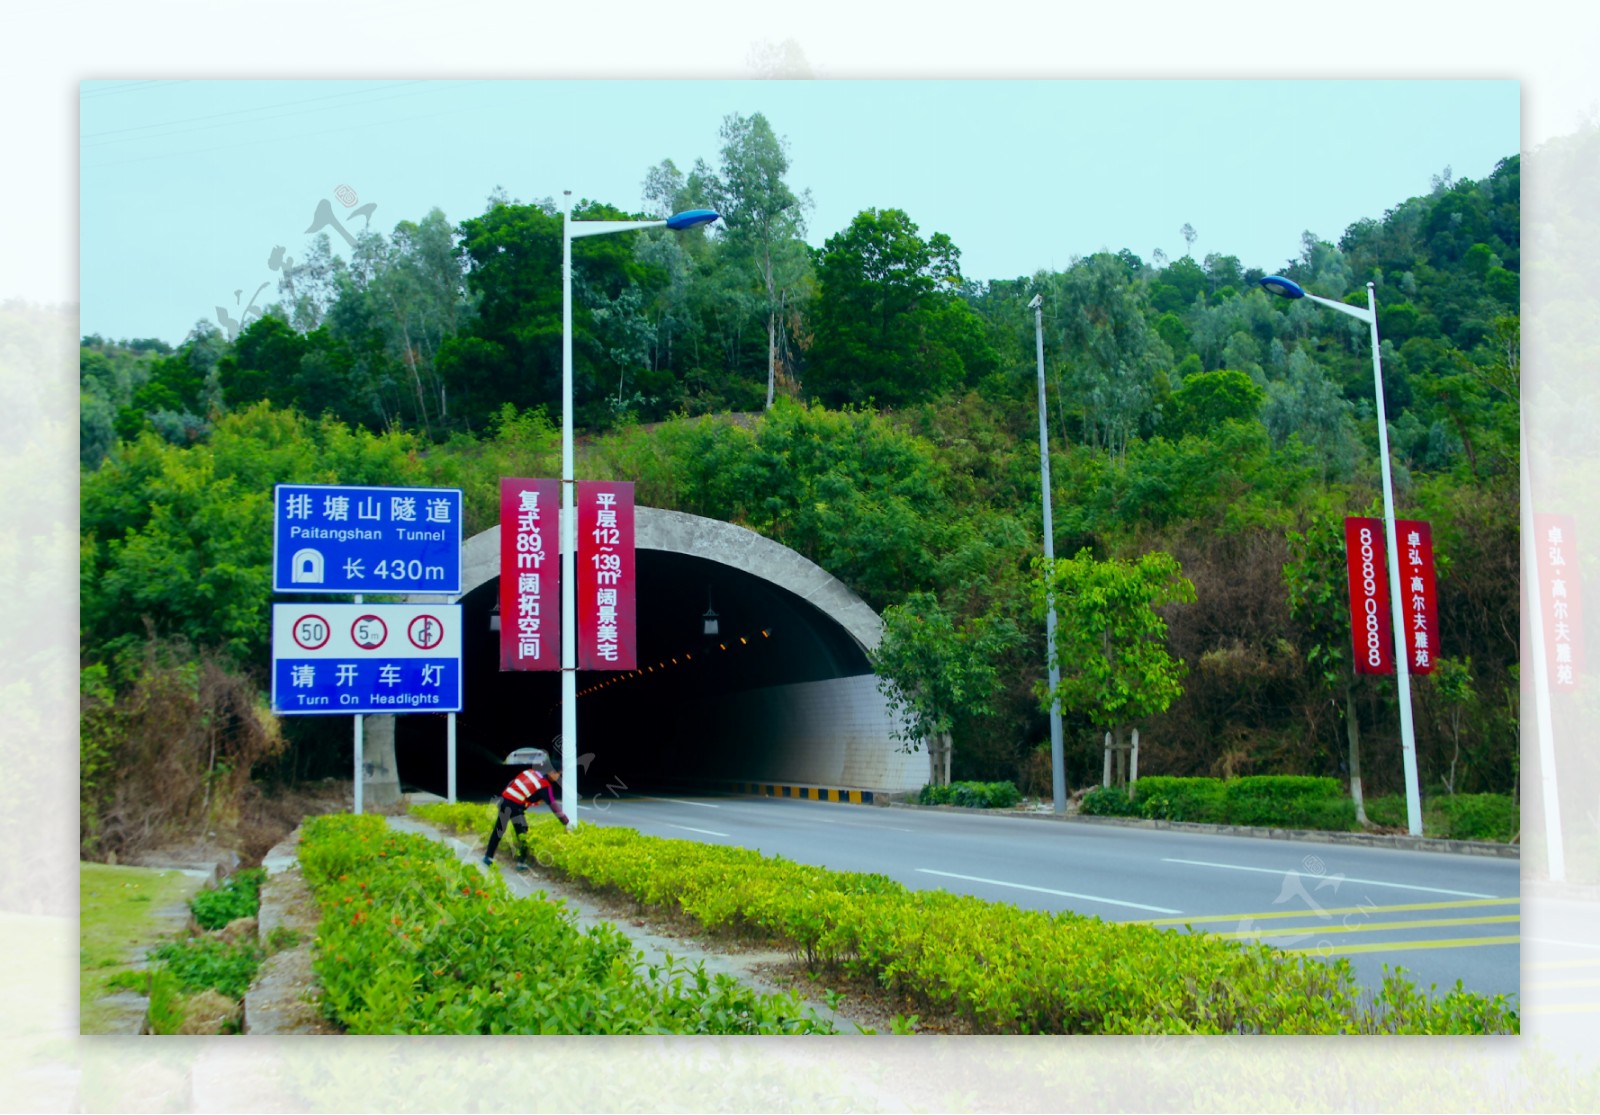 中国交通隧道摄影图片